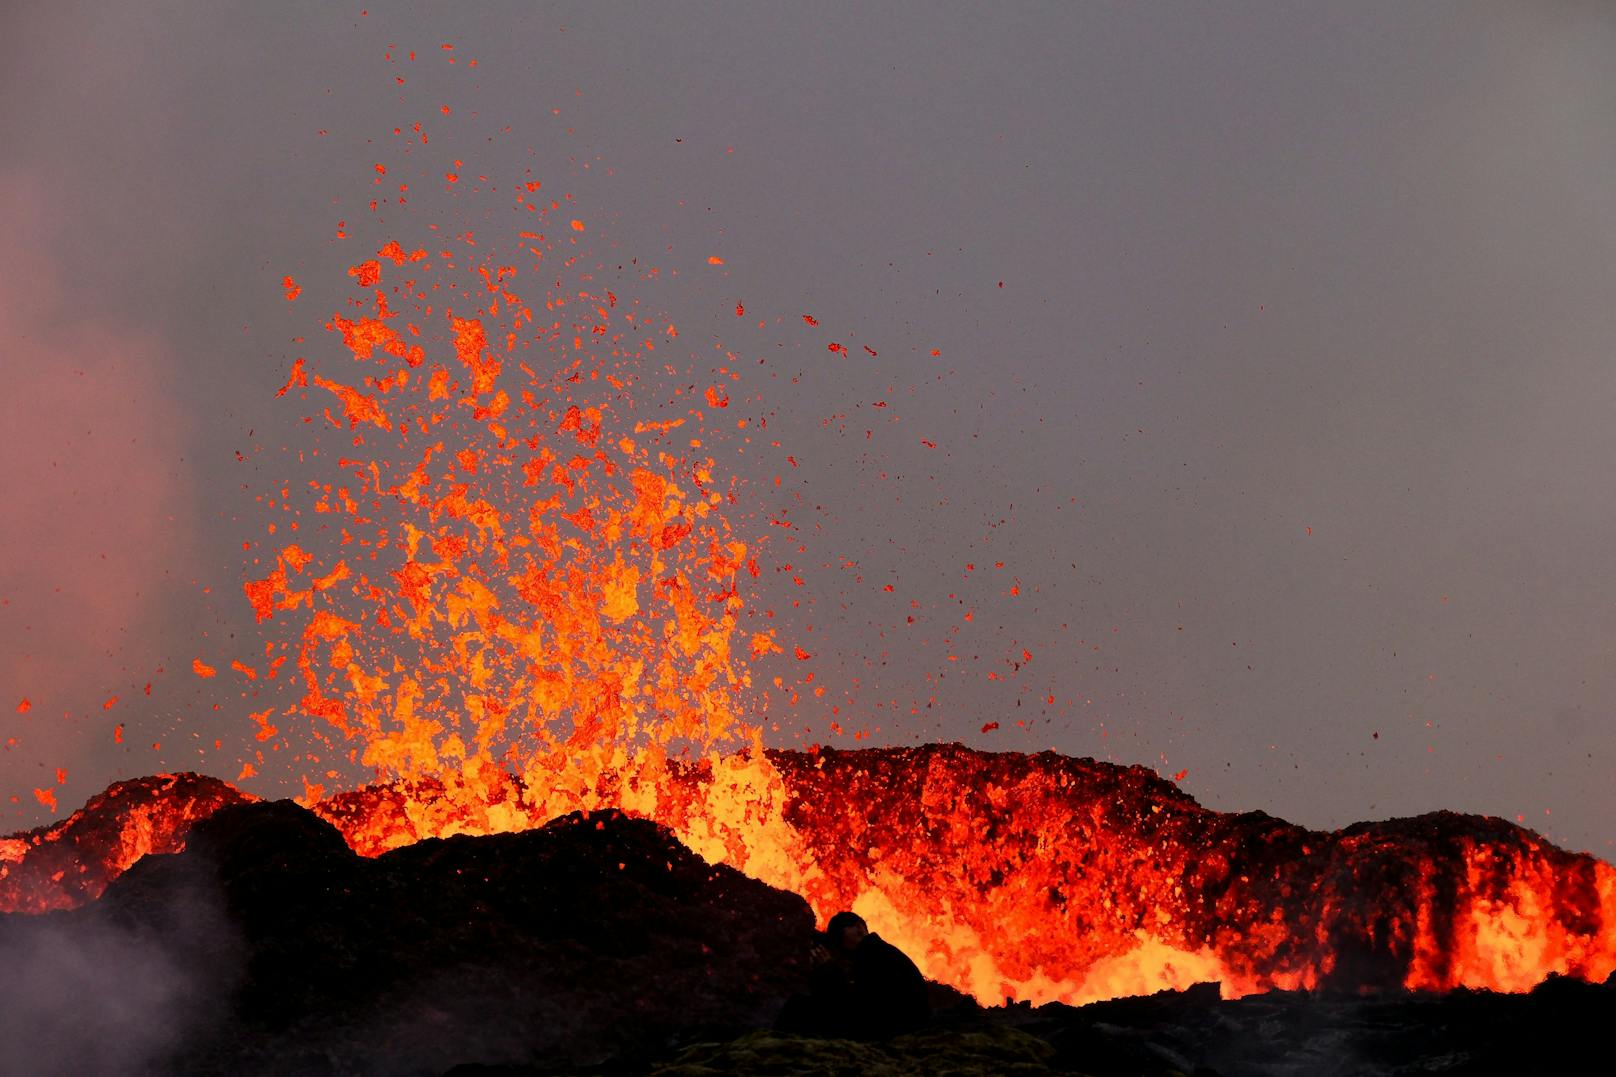 In der Nähe könnten sich "gefährlich hohe Mengen an vulkanischen Gasen" ansammeln, teilte das isländische Wetteramt mit.